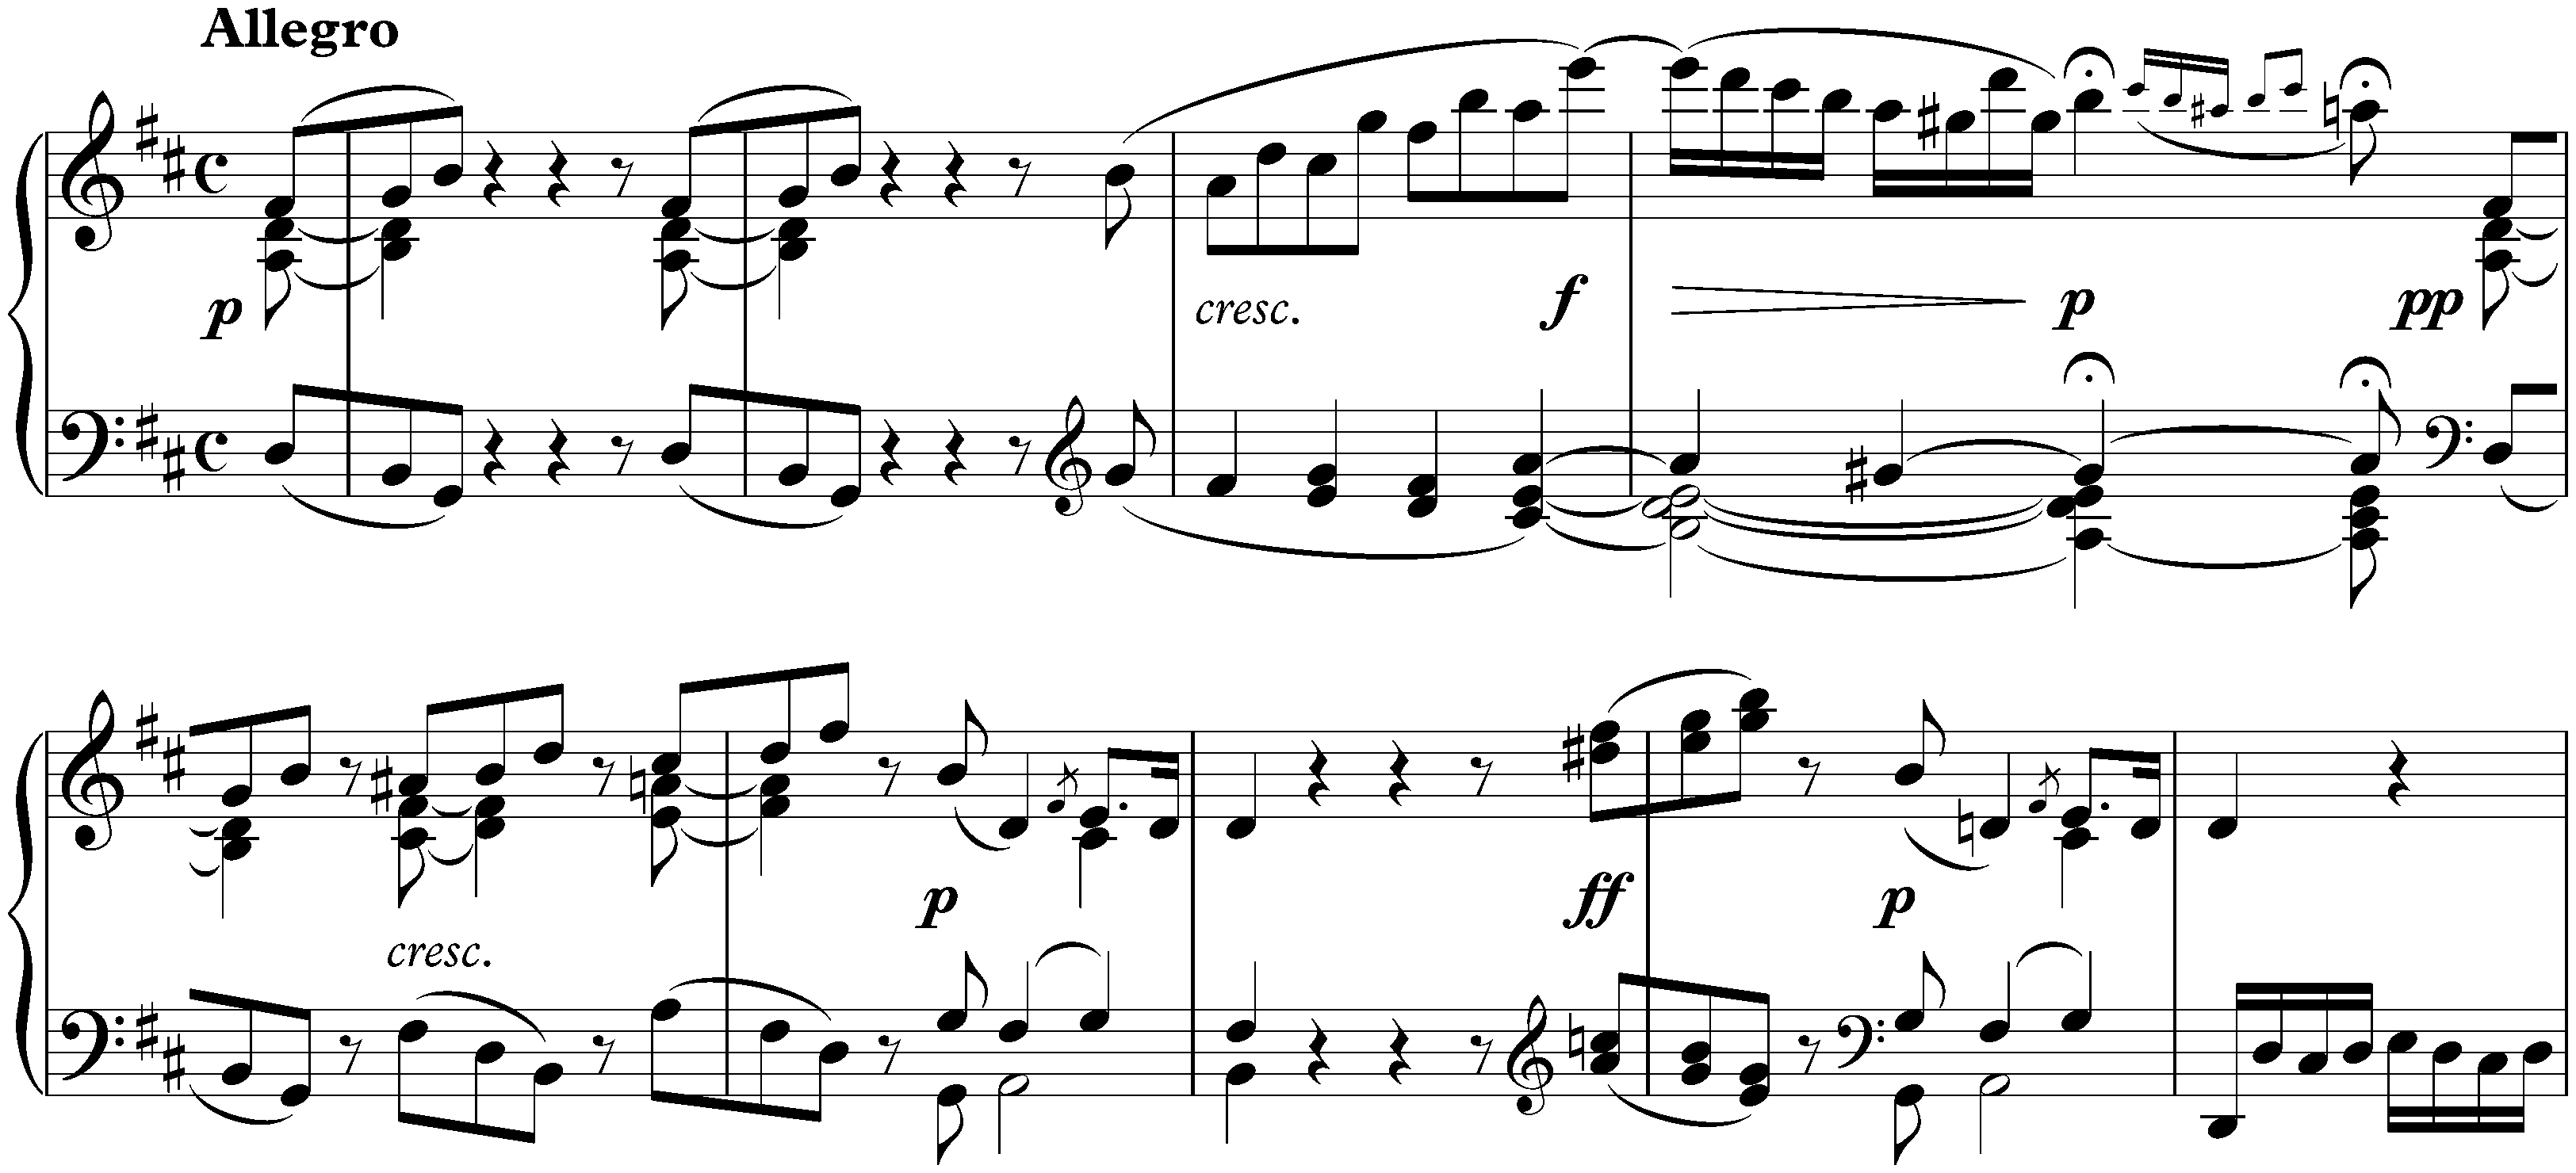 Sonata no. 7 in D major, op. 10 no. 3; 4. Rondo: Allegro